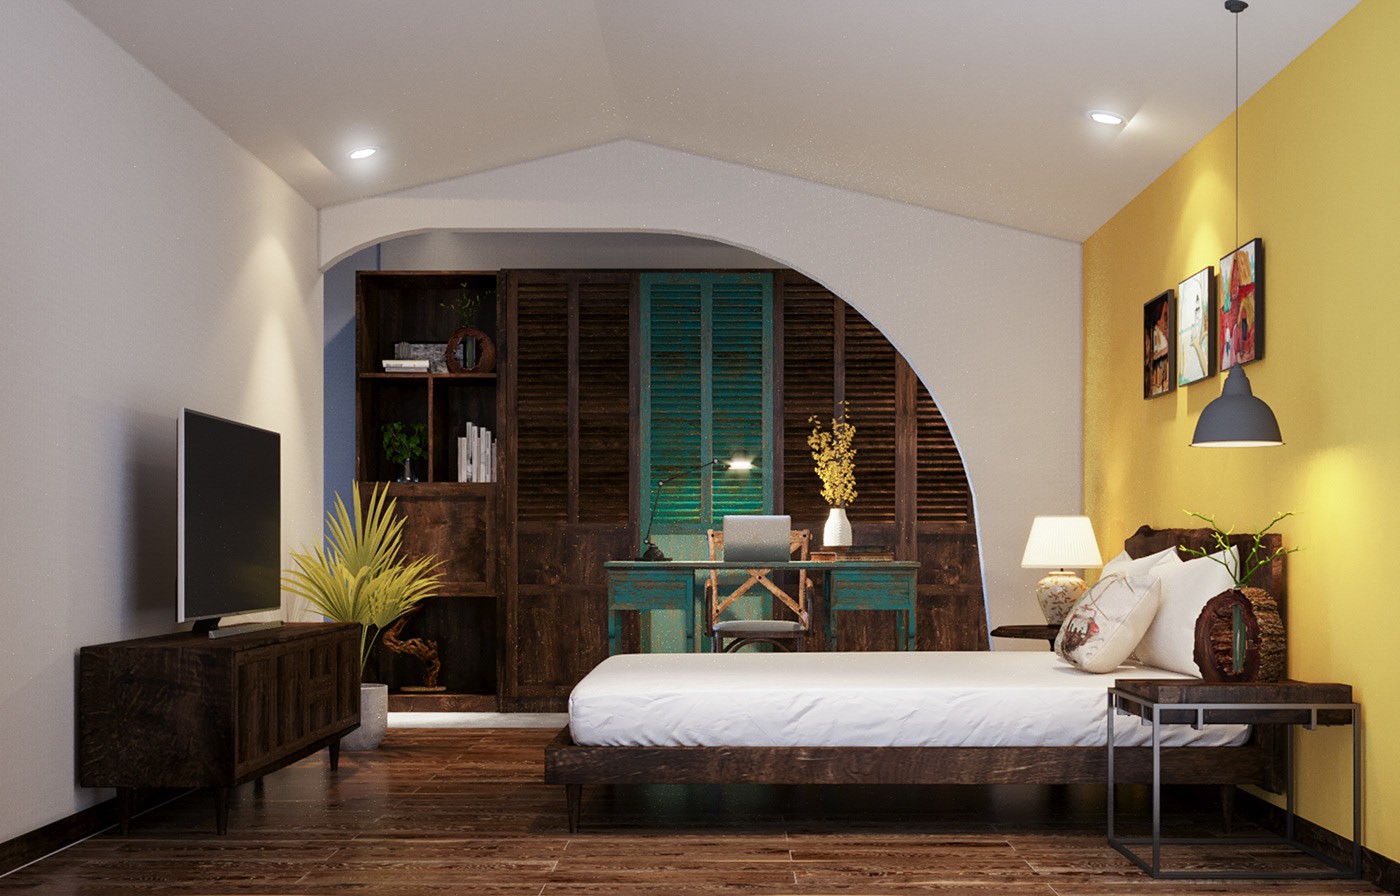 Hình ảnh phòng ngủ với tường đầu giường sơn vàng, đối diện là tủ kệ tivi bằng gỗ, tủ quần áo cùng tông, khung cửa vòm, bàn làm việc